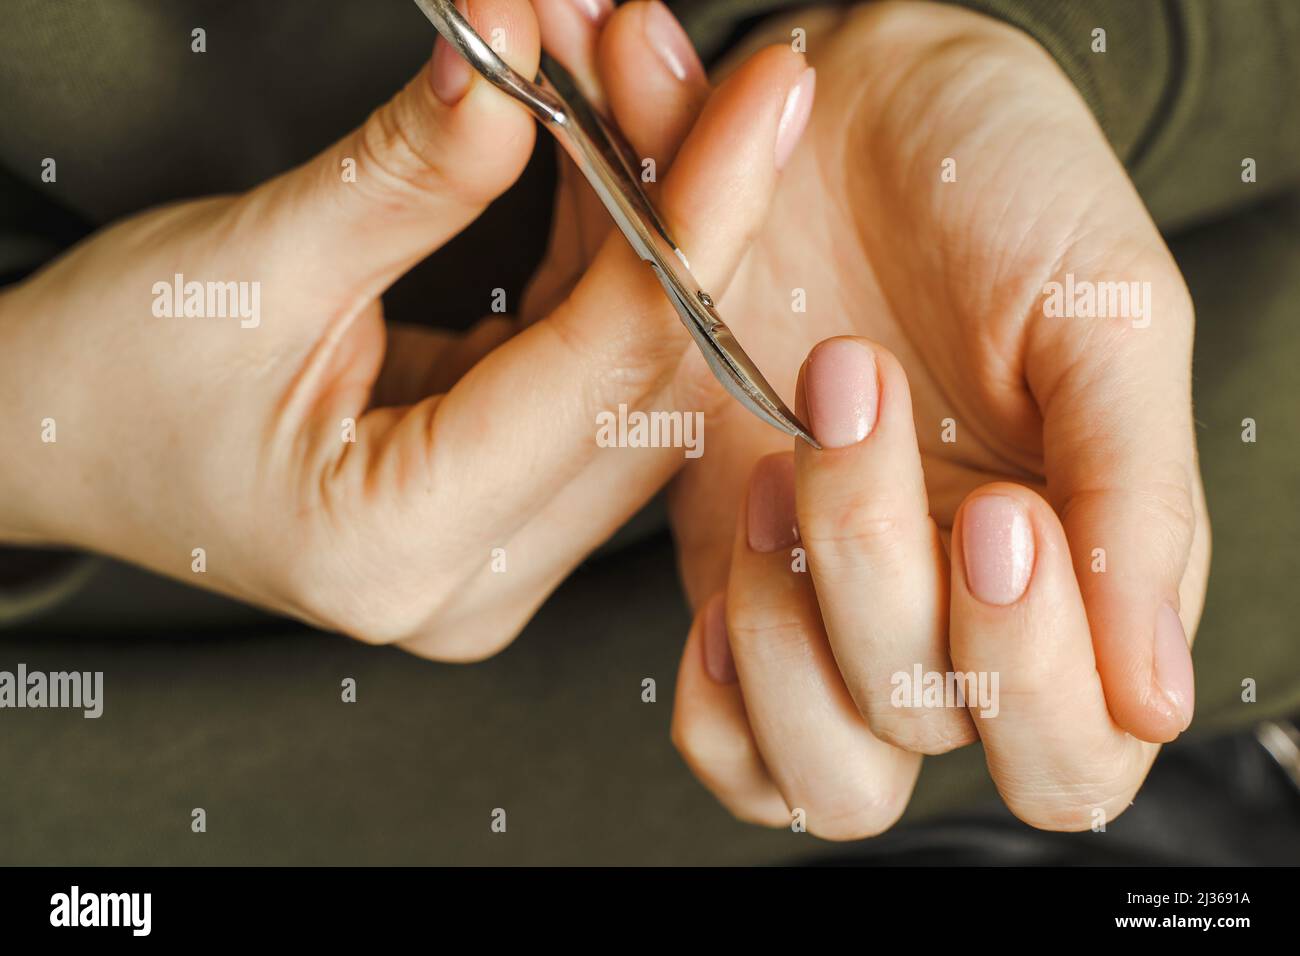 Les mains des femmes avec manucure tiennent un outil de traitement des ongles Banque D'Images